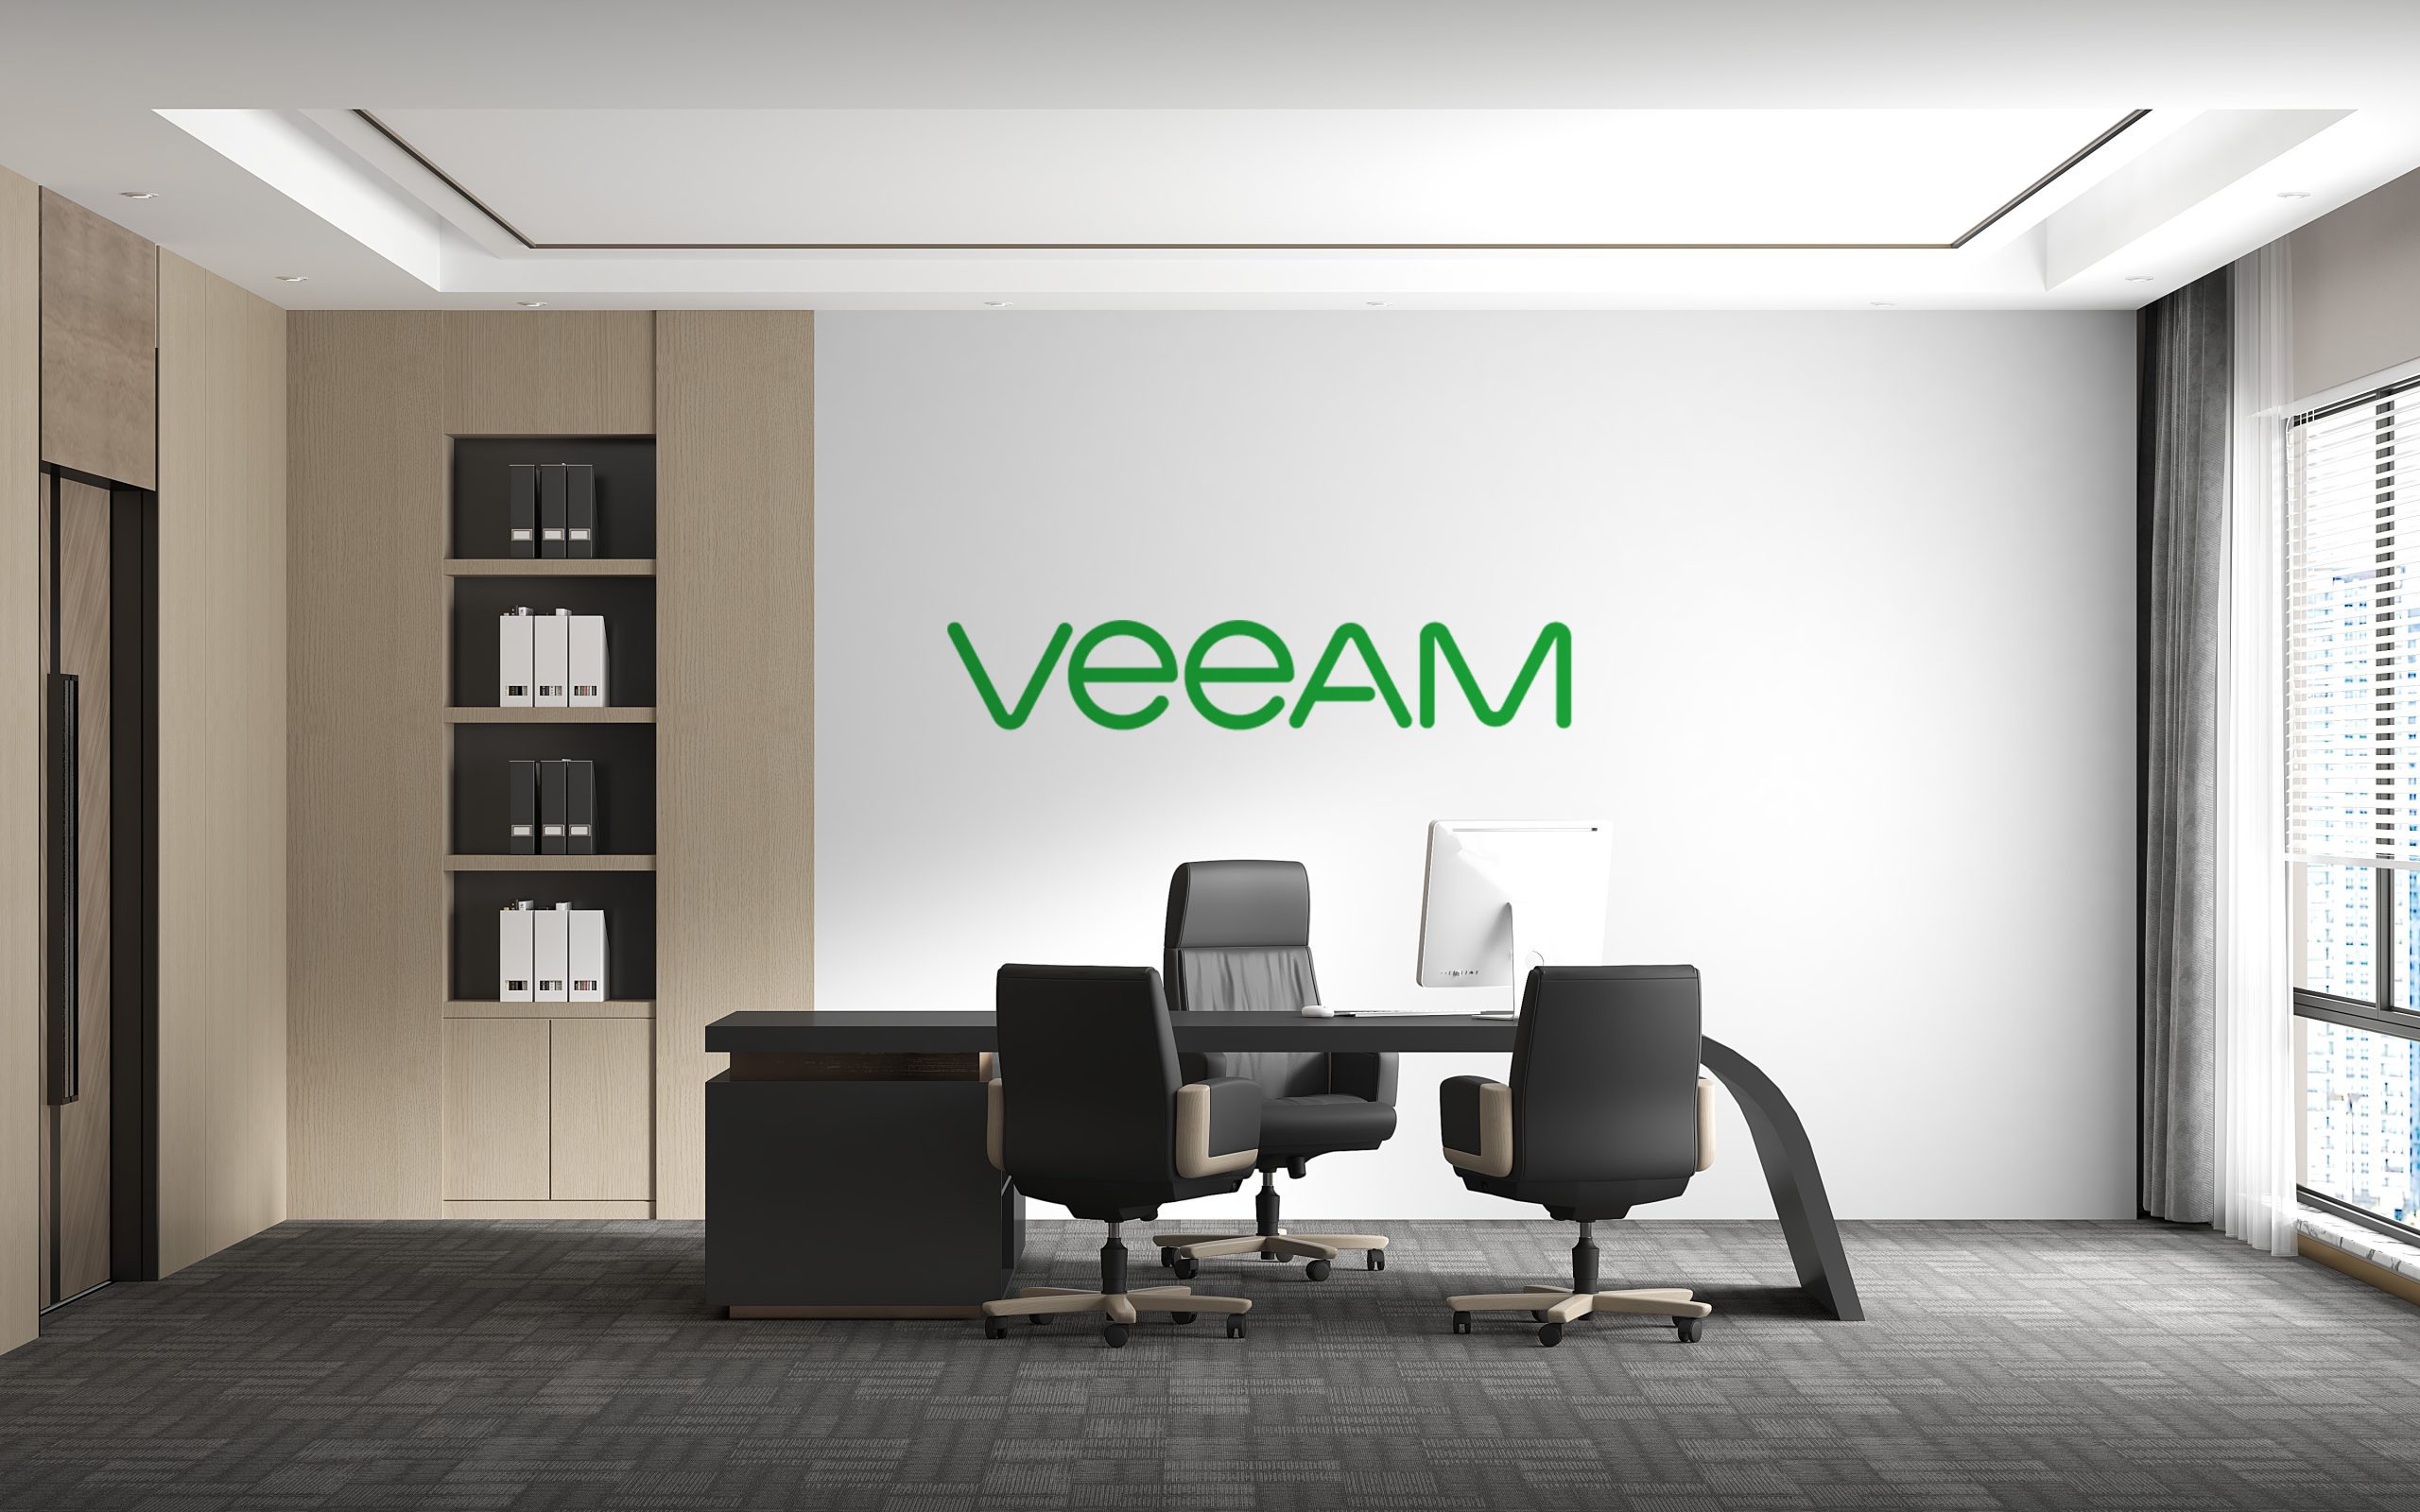 Aufgeräumtes Chefbüro mit IMac. An der Wand ist das Veeam Logo